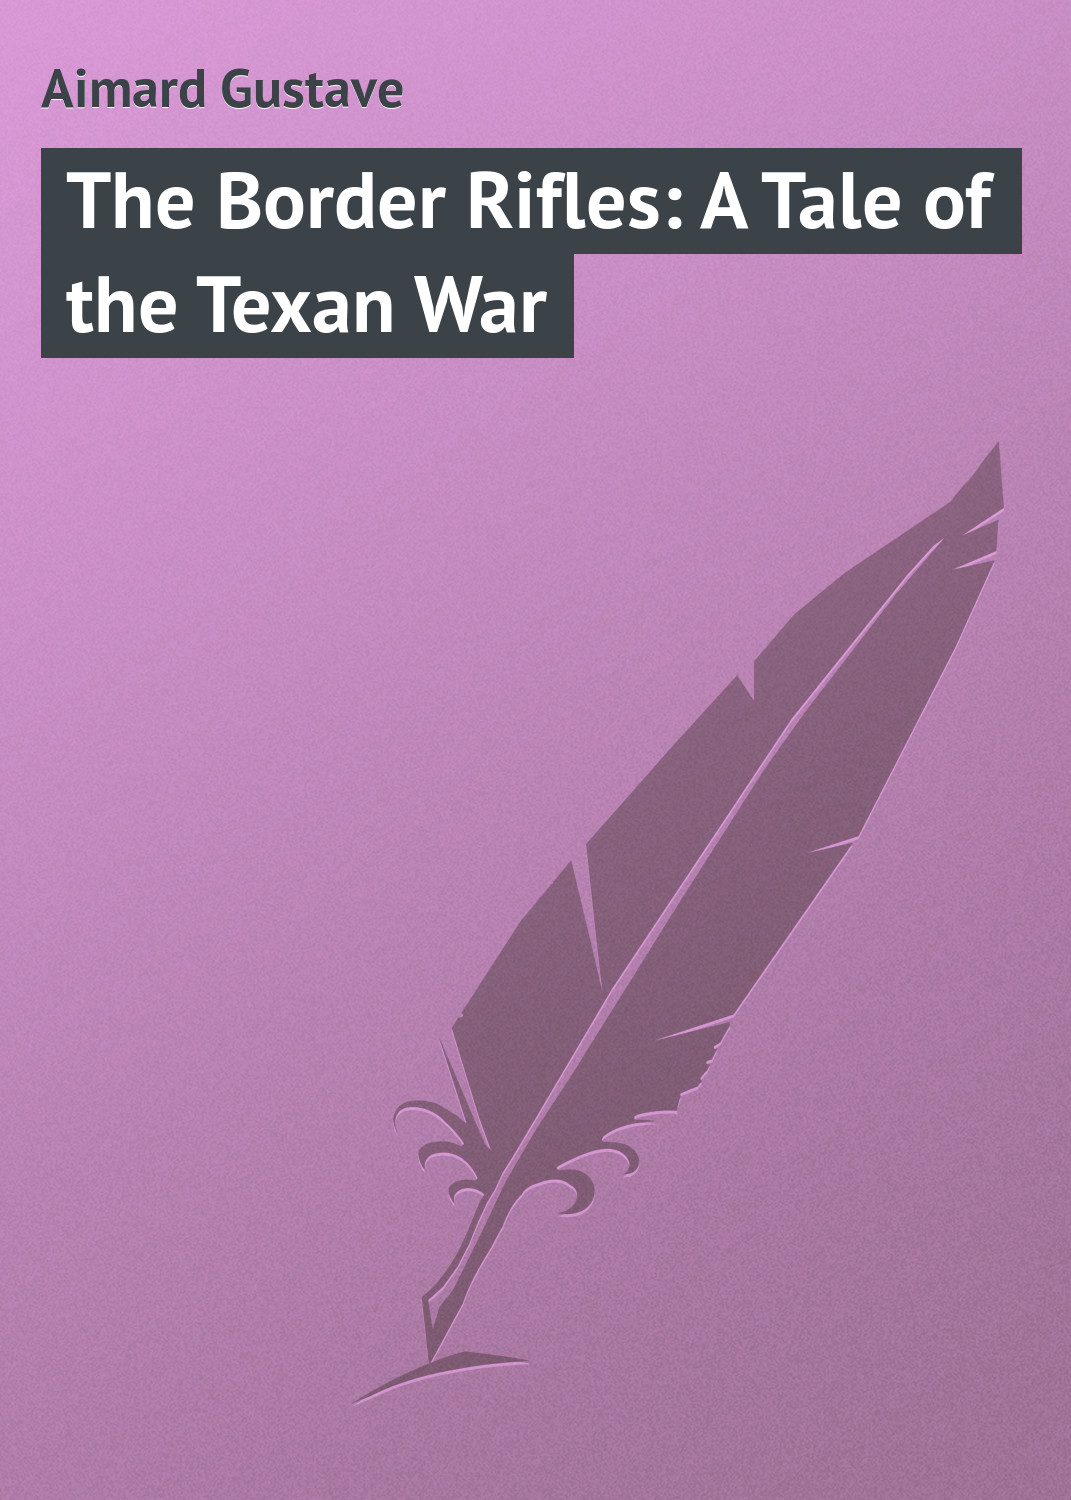 Книга The Border Rifles: A Tale of the Texan War из серии , созданная Gustave Aimard, может относится к жанру Зарубежная классика, Зарубежные приключения, Иностранные языки. Стоимость электронной книги The Border Rifles: A Tale of the Texan War с идентификатором 23150619 составляет 5.99 руб.